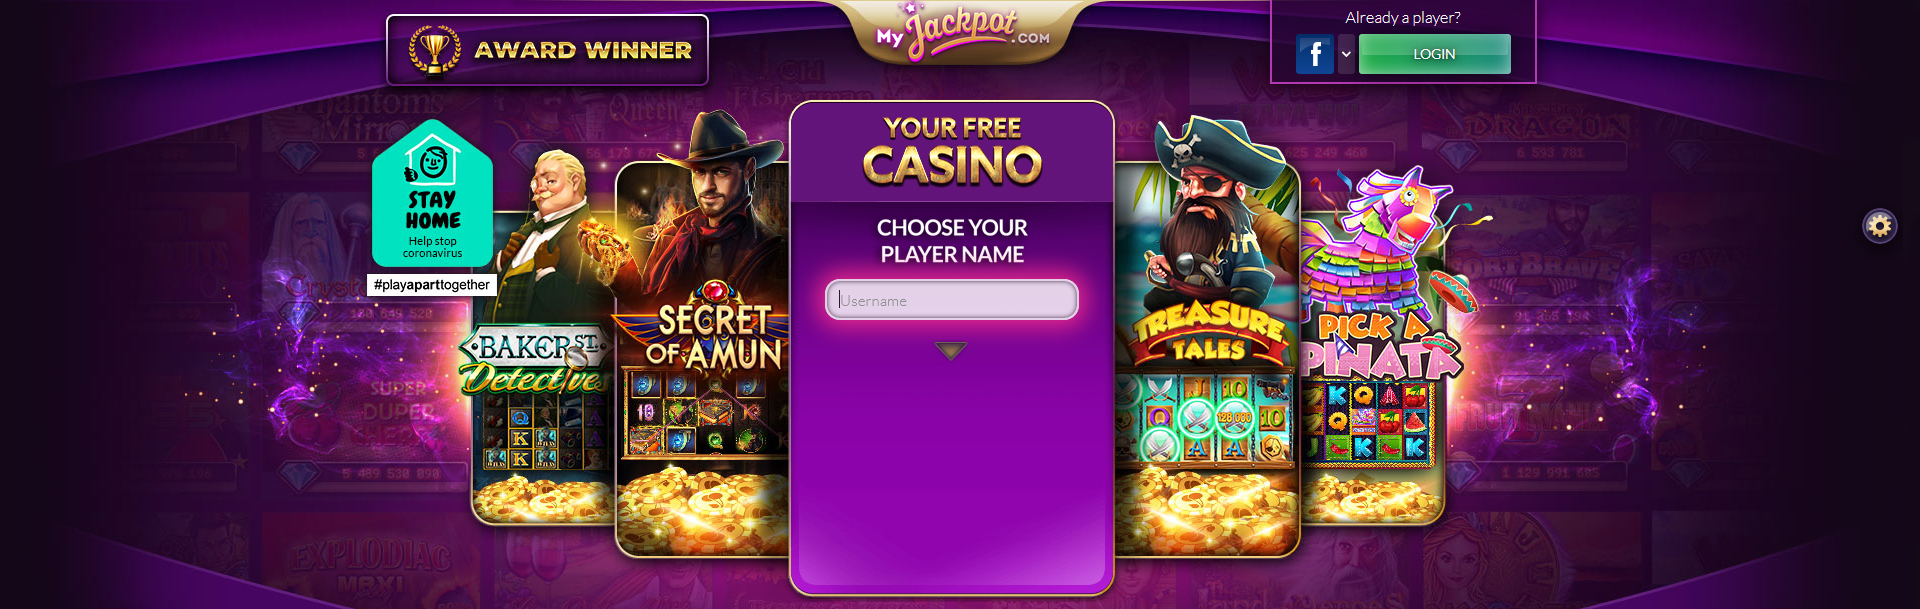 Screenshot Myjackpot Casino.